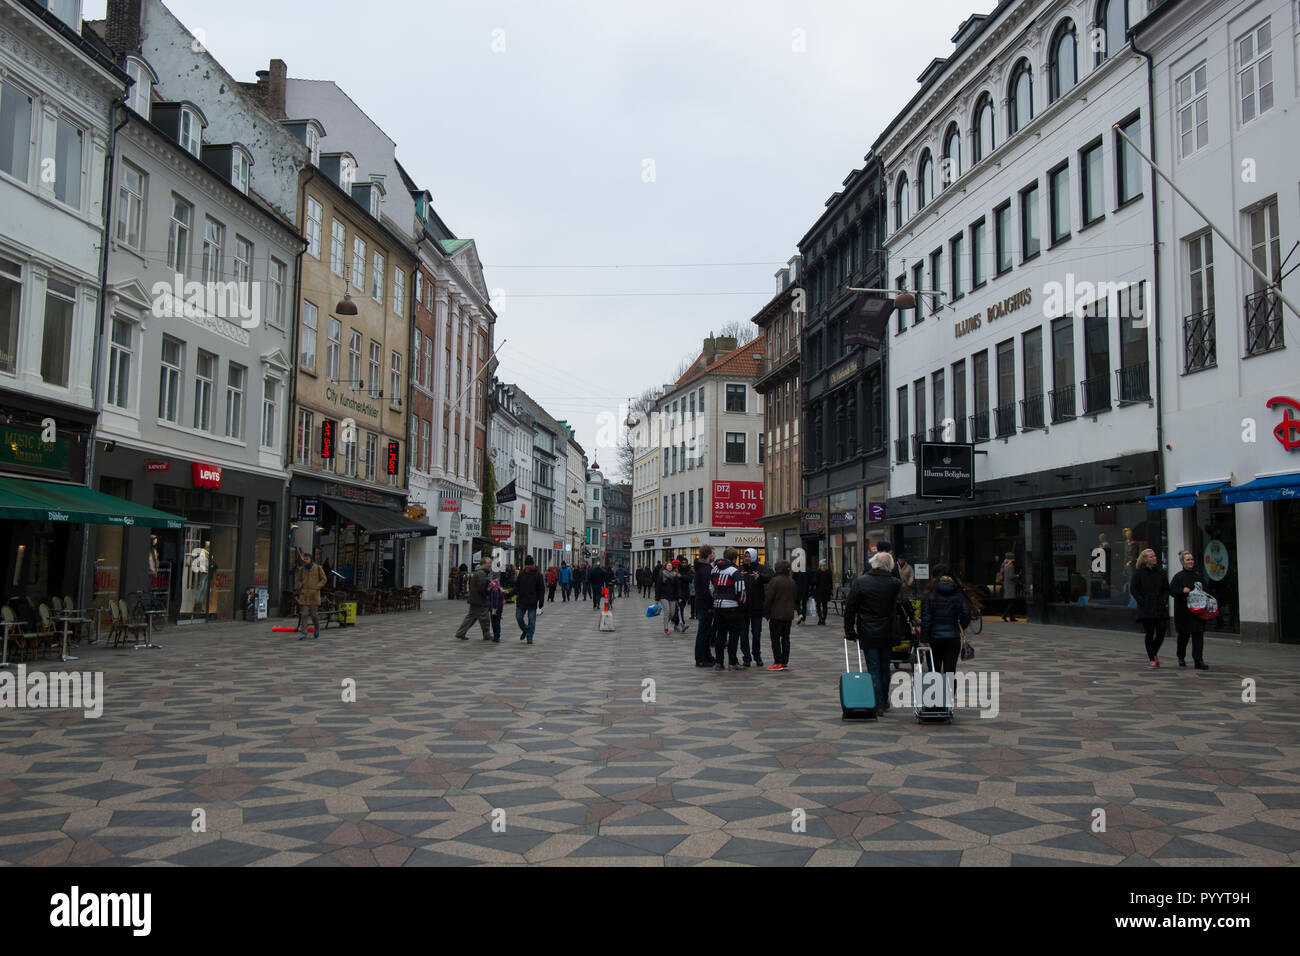 Shopping along Amagertorv street in Copenhagen, Denmark in winter. Stock Photo